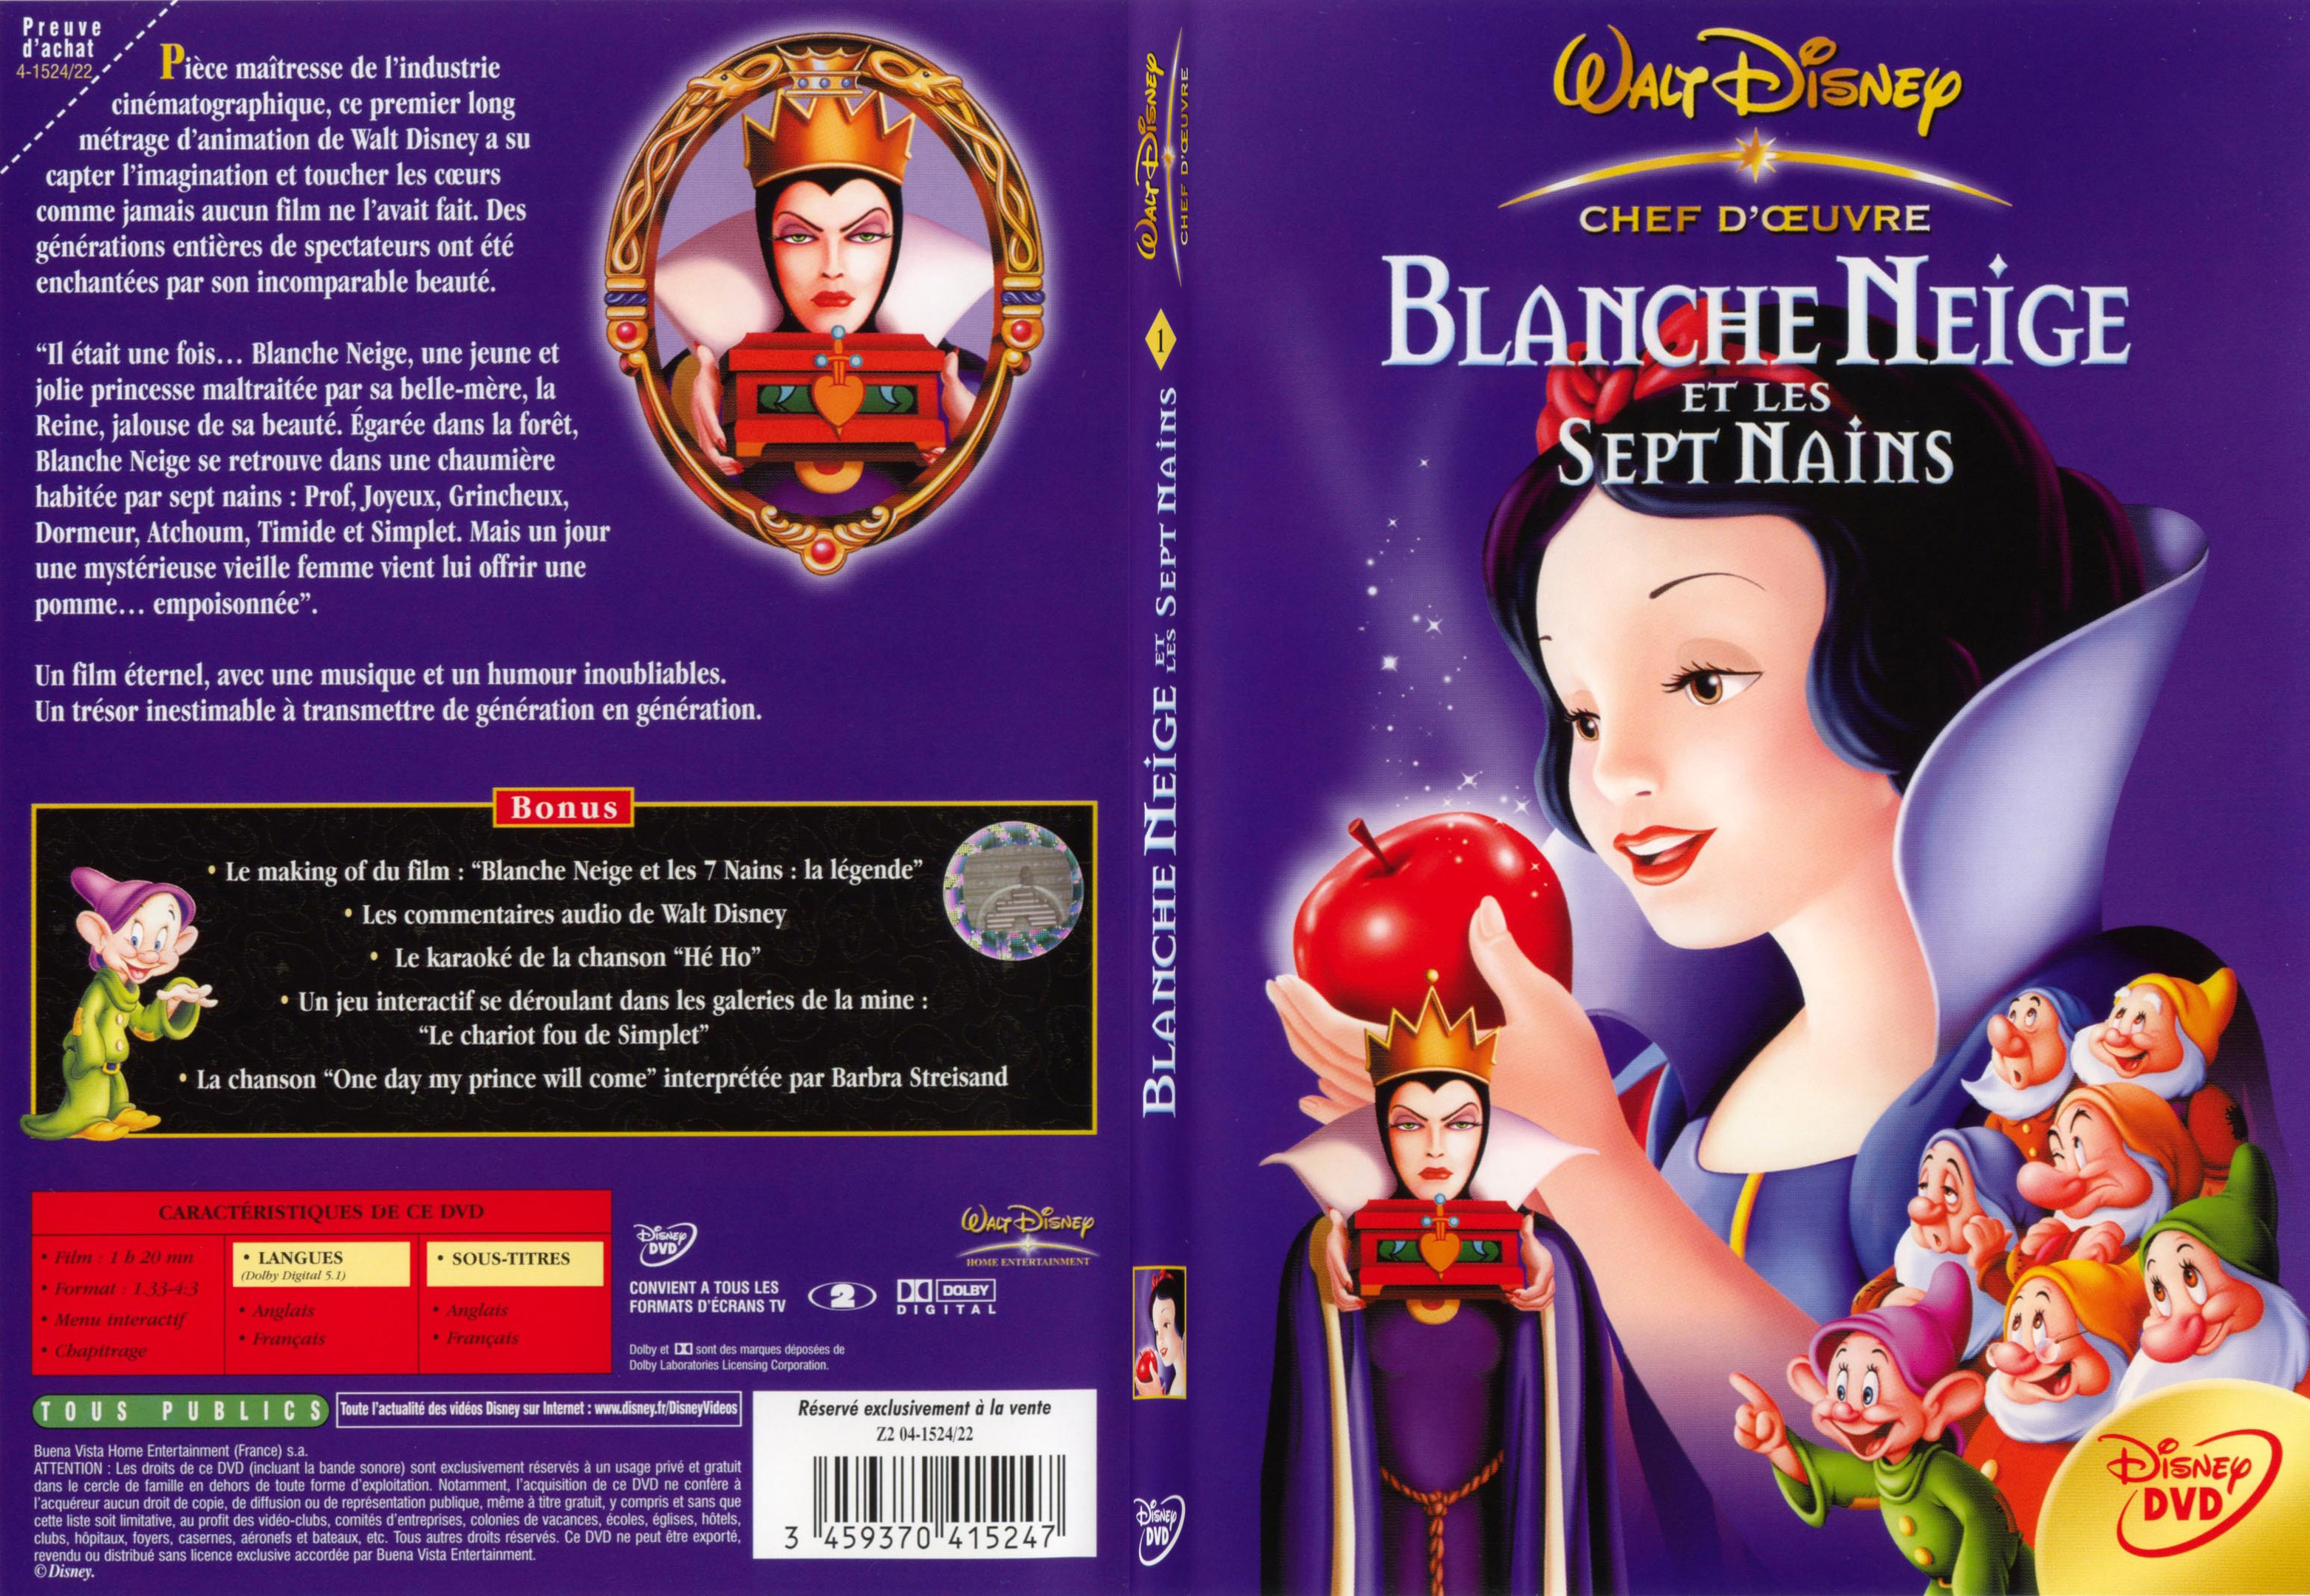 Jaquette DVD Blanche Neige et les sept nains - SLIM